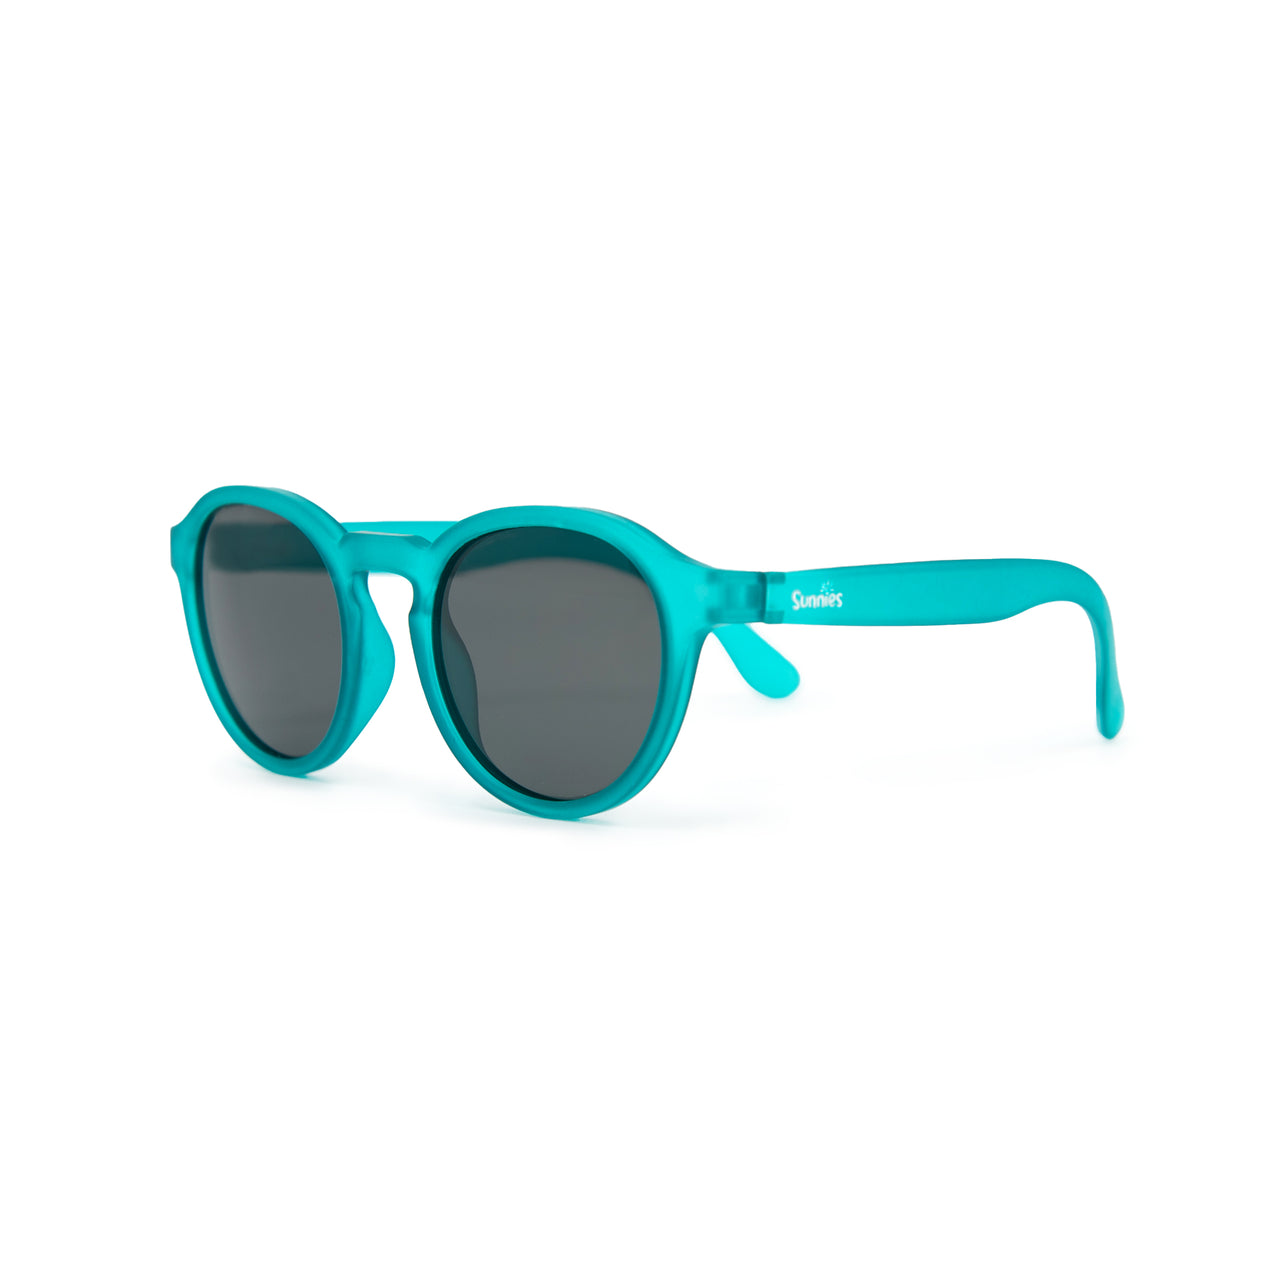 Teal Me a Secret - Teal Round Frame Sunglasses for Kids (Pre-Order)